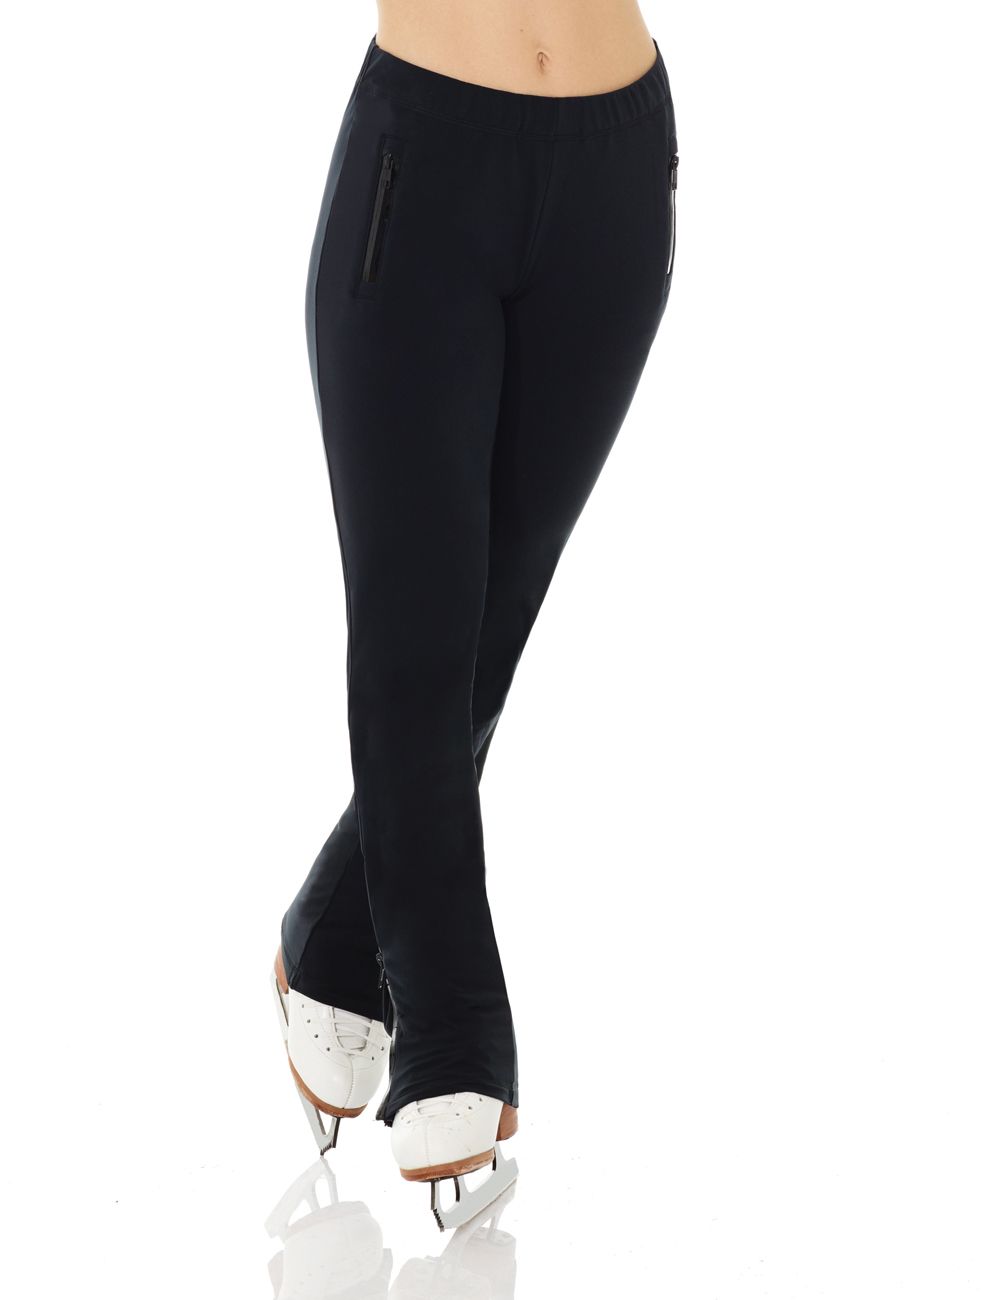 Mondor 1031 Powerflex Ladies Skating Pants in Black - Large